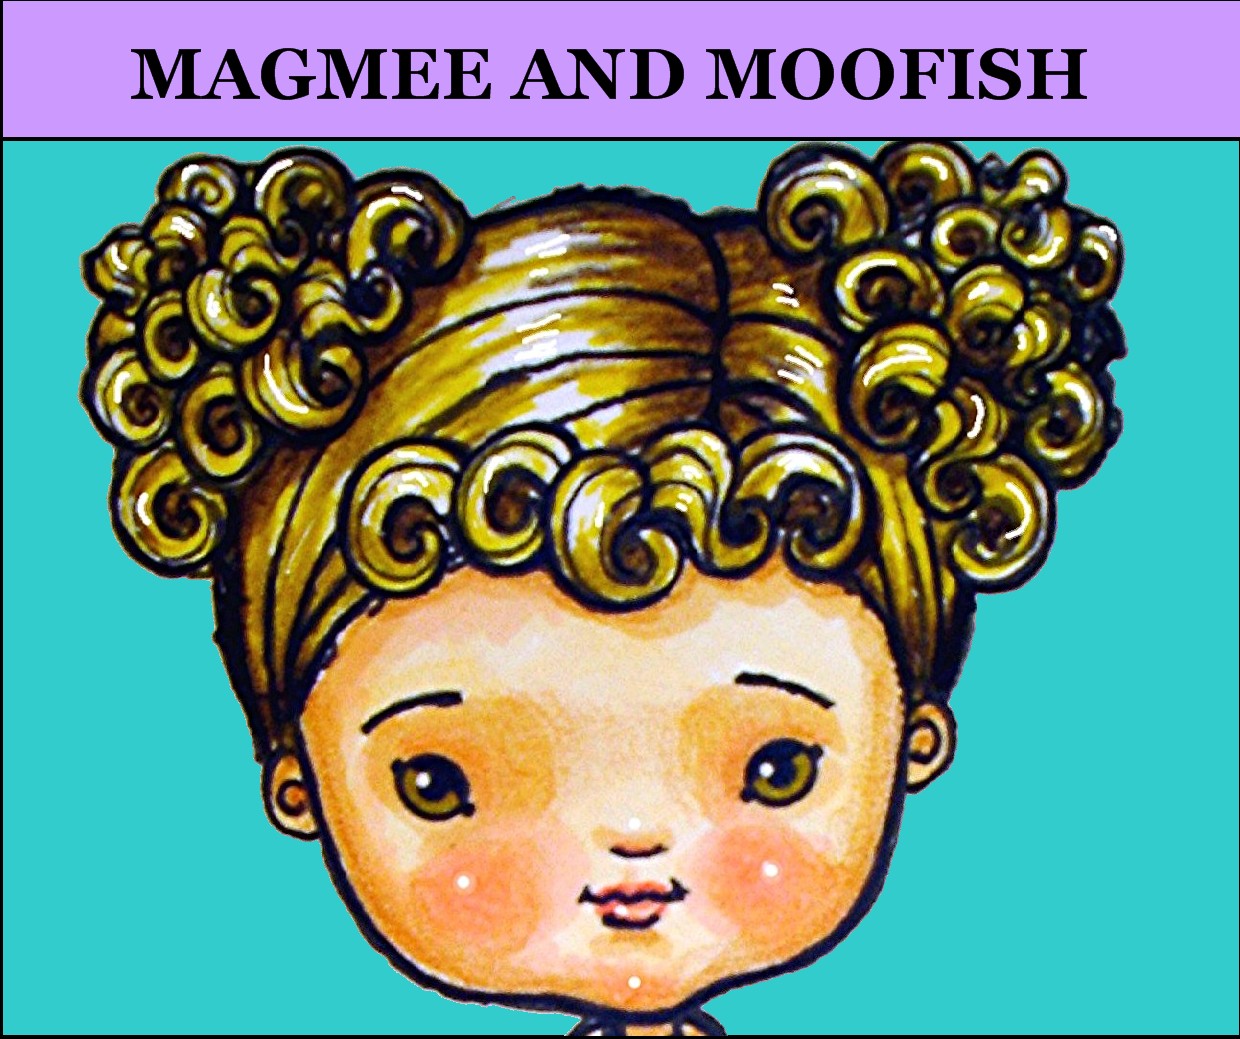 Magmee and Moofish